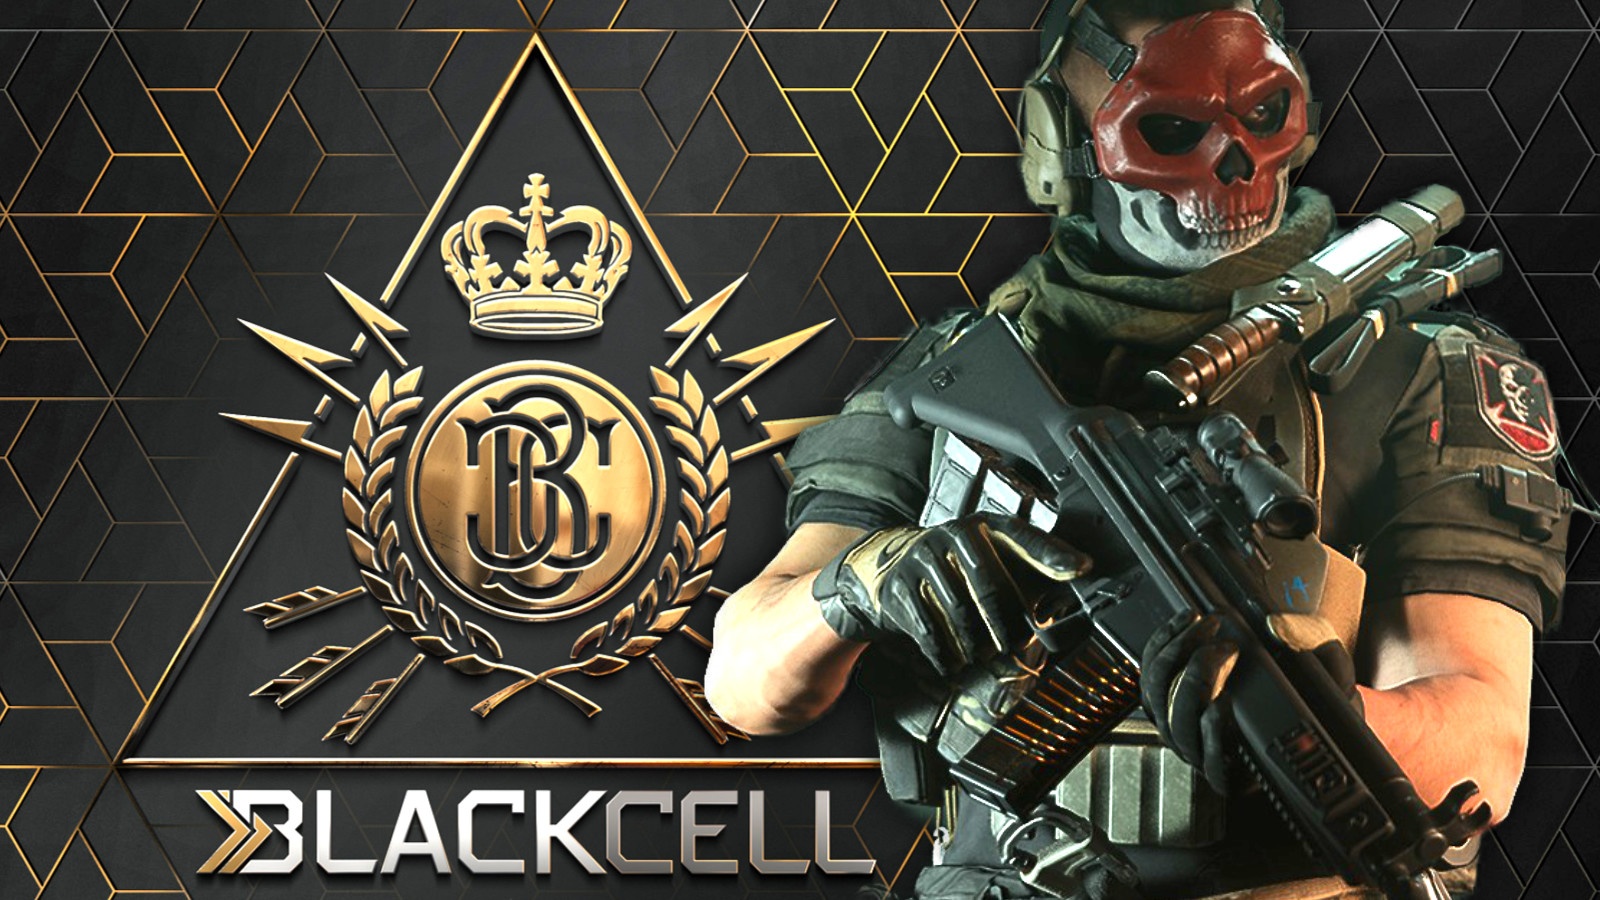 #CoD Warzone 2: Was ist der neue Blackcell Battle Pass und wie funktioniert er?